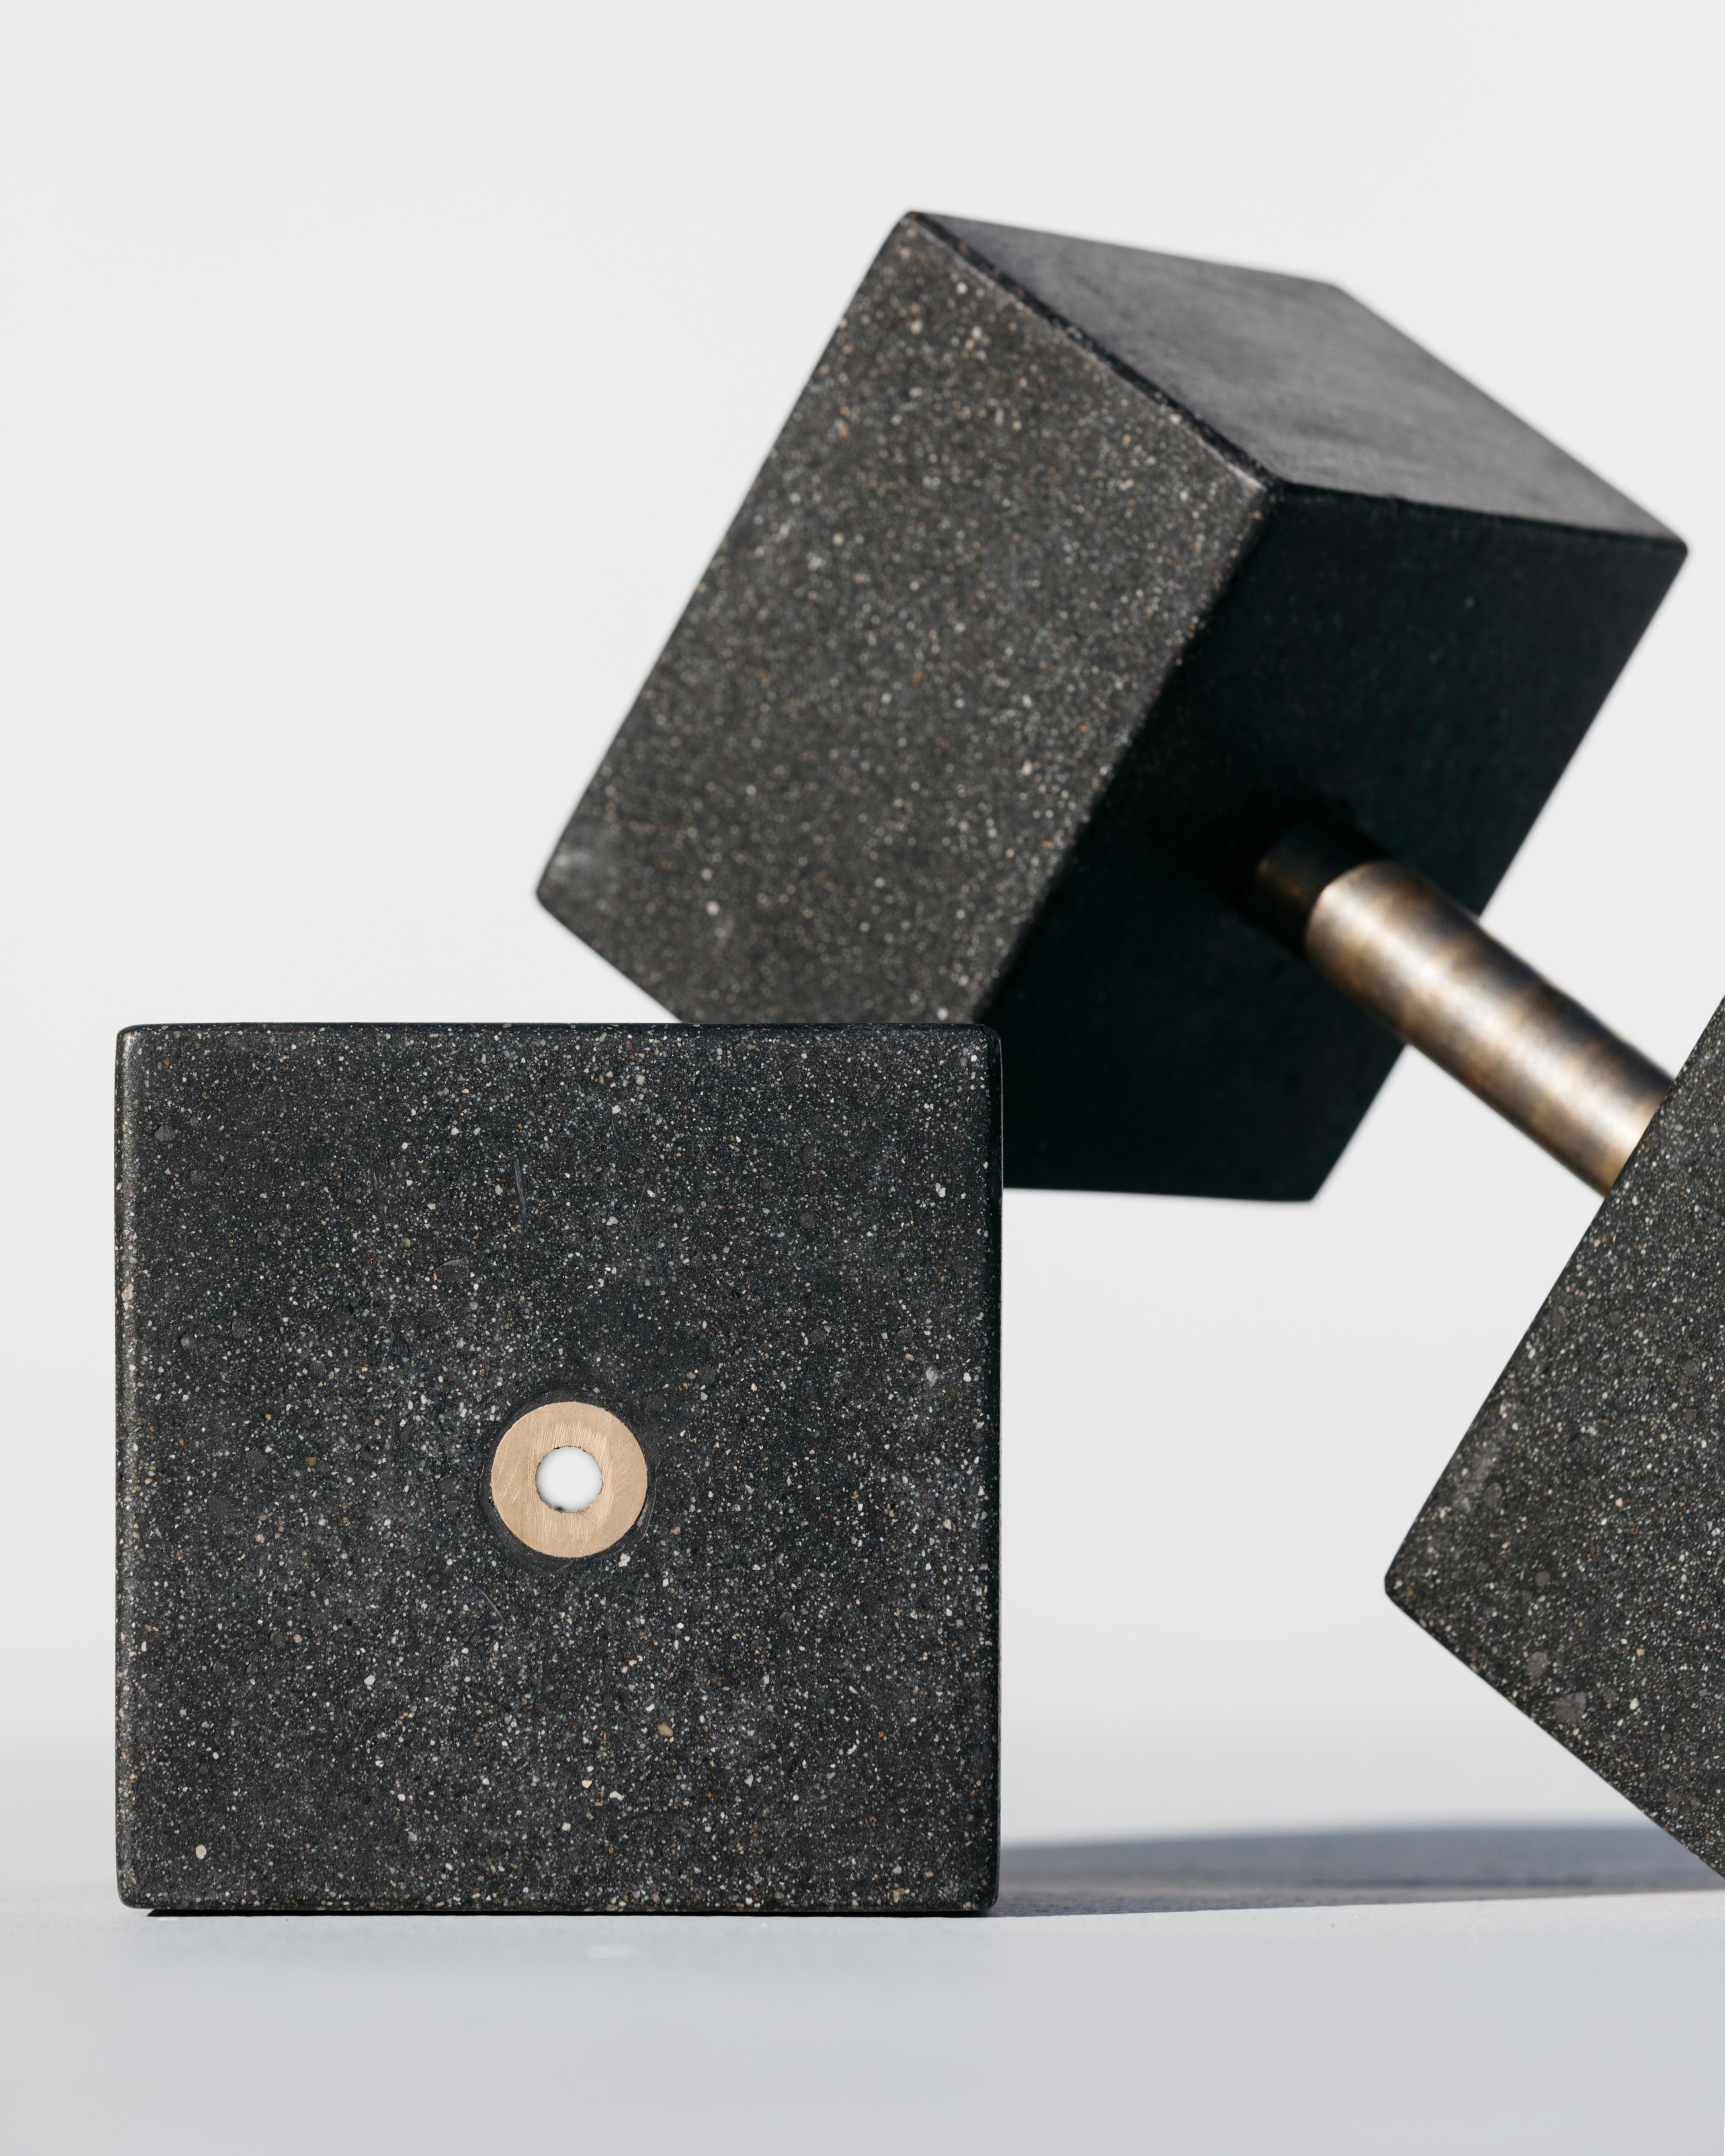 Wenn Beton und Bronze zusammentreffen, ist das eine Verbindung von starken ästhetischen Elementen. Jedes Gewicht ist aus Stahlbeton gefertigt, poliert und versiegelt, um einen glatten, einzigartigen Glanz zu erzielen. Der Bronzestab liegt am Ende